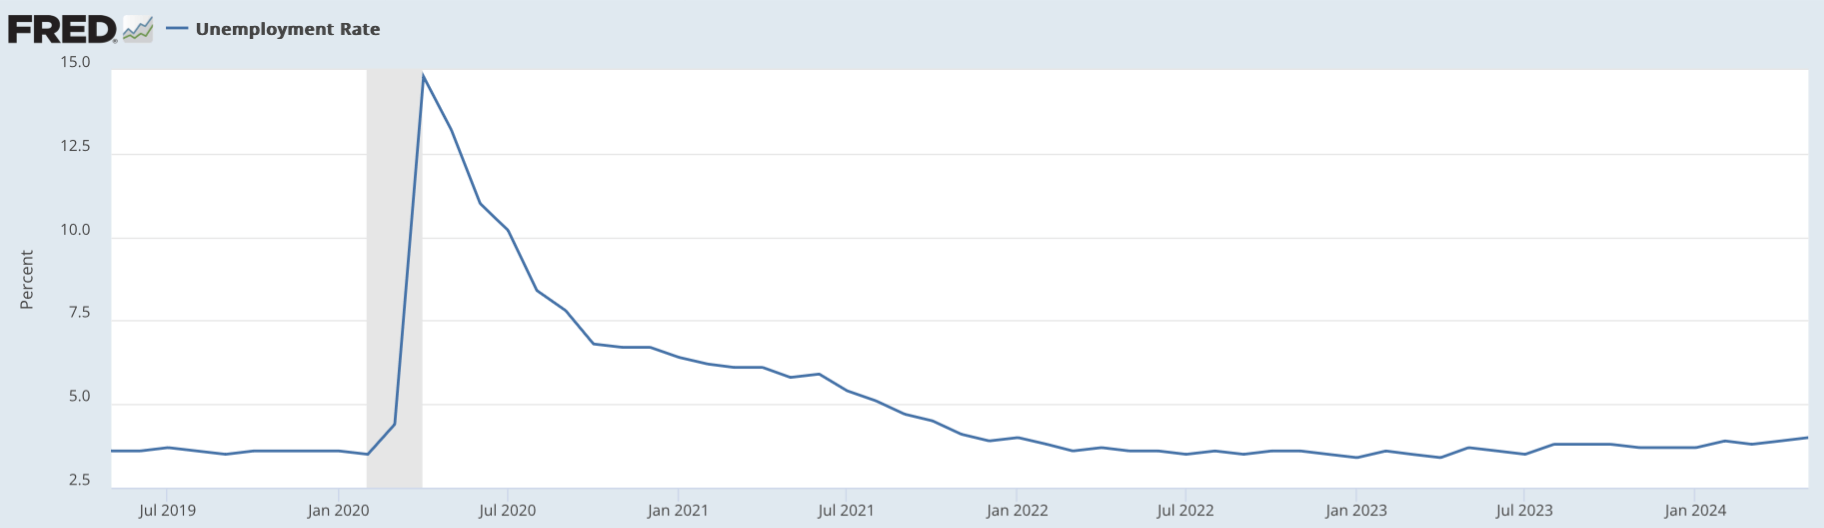 Что происходит с Биткоином? Данные по безработице в США за последние пять лет. Фото.